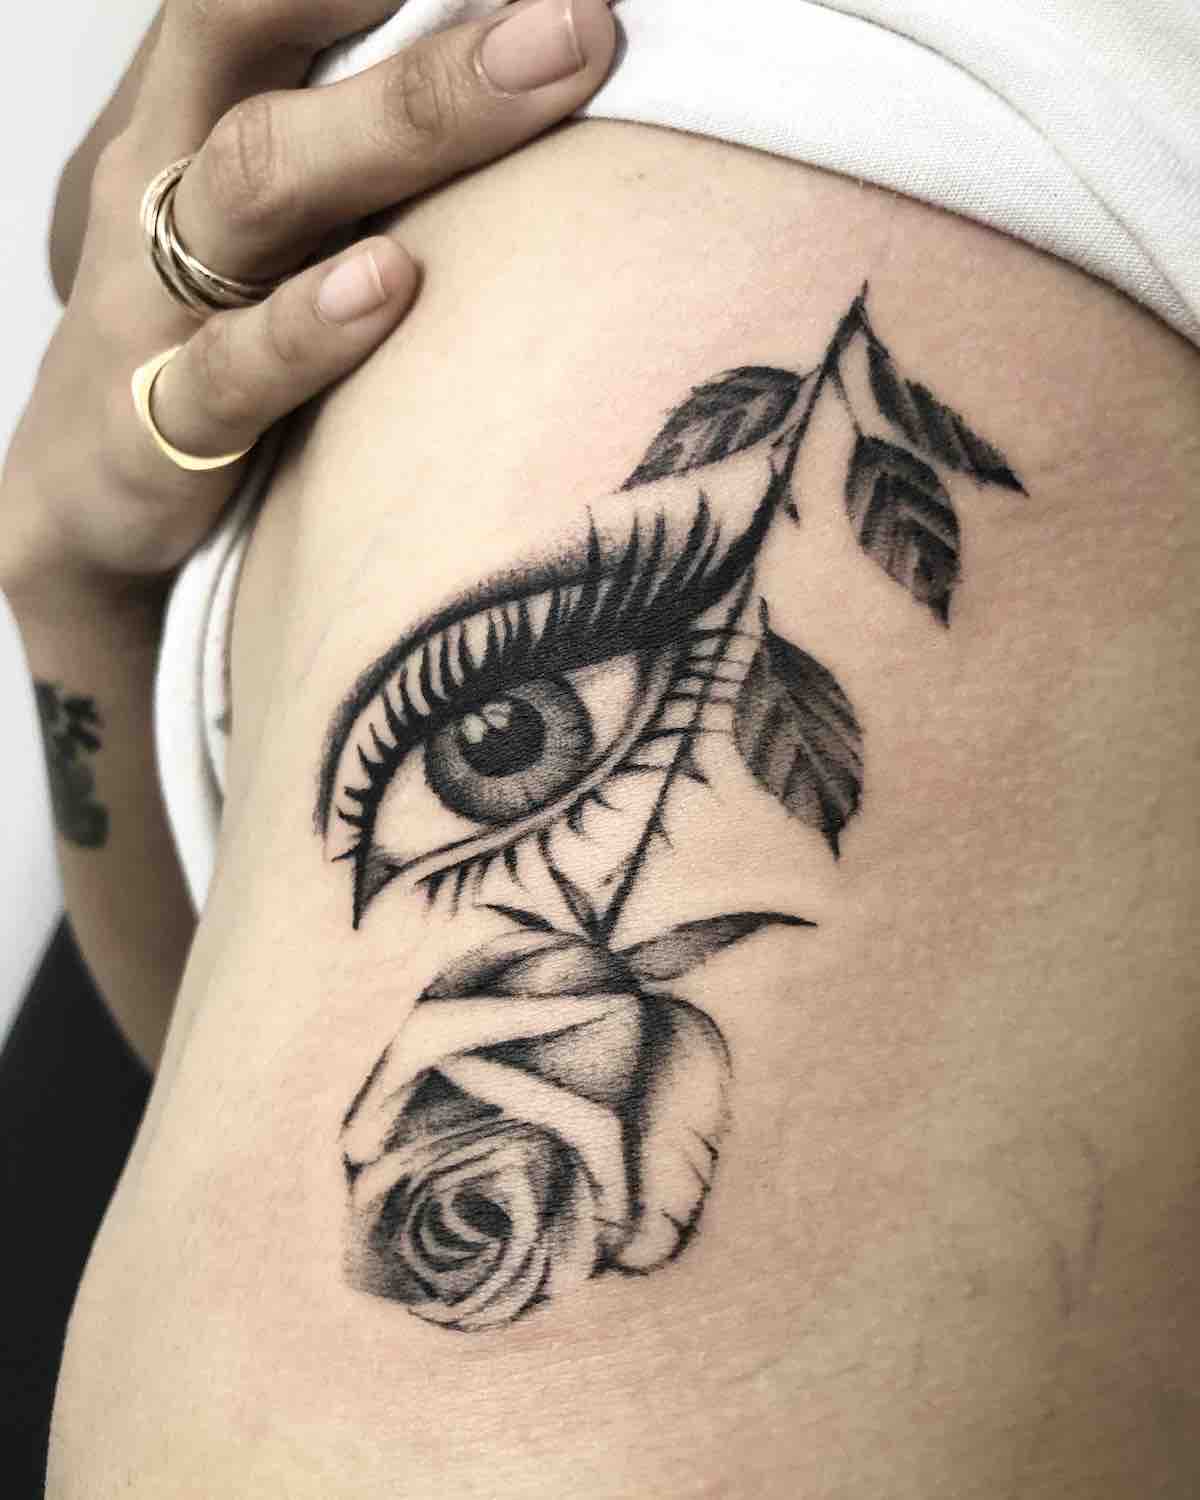 Tattoo by Drew